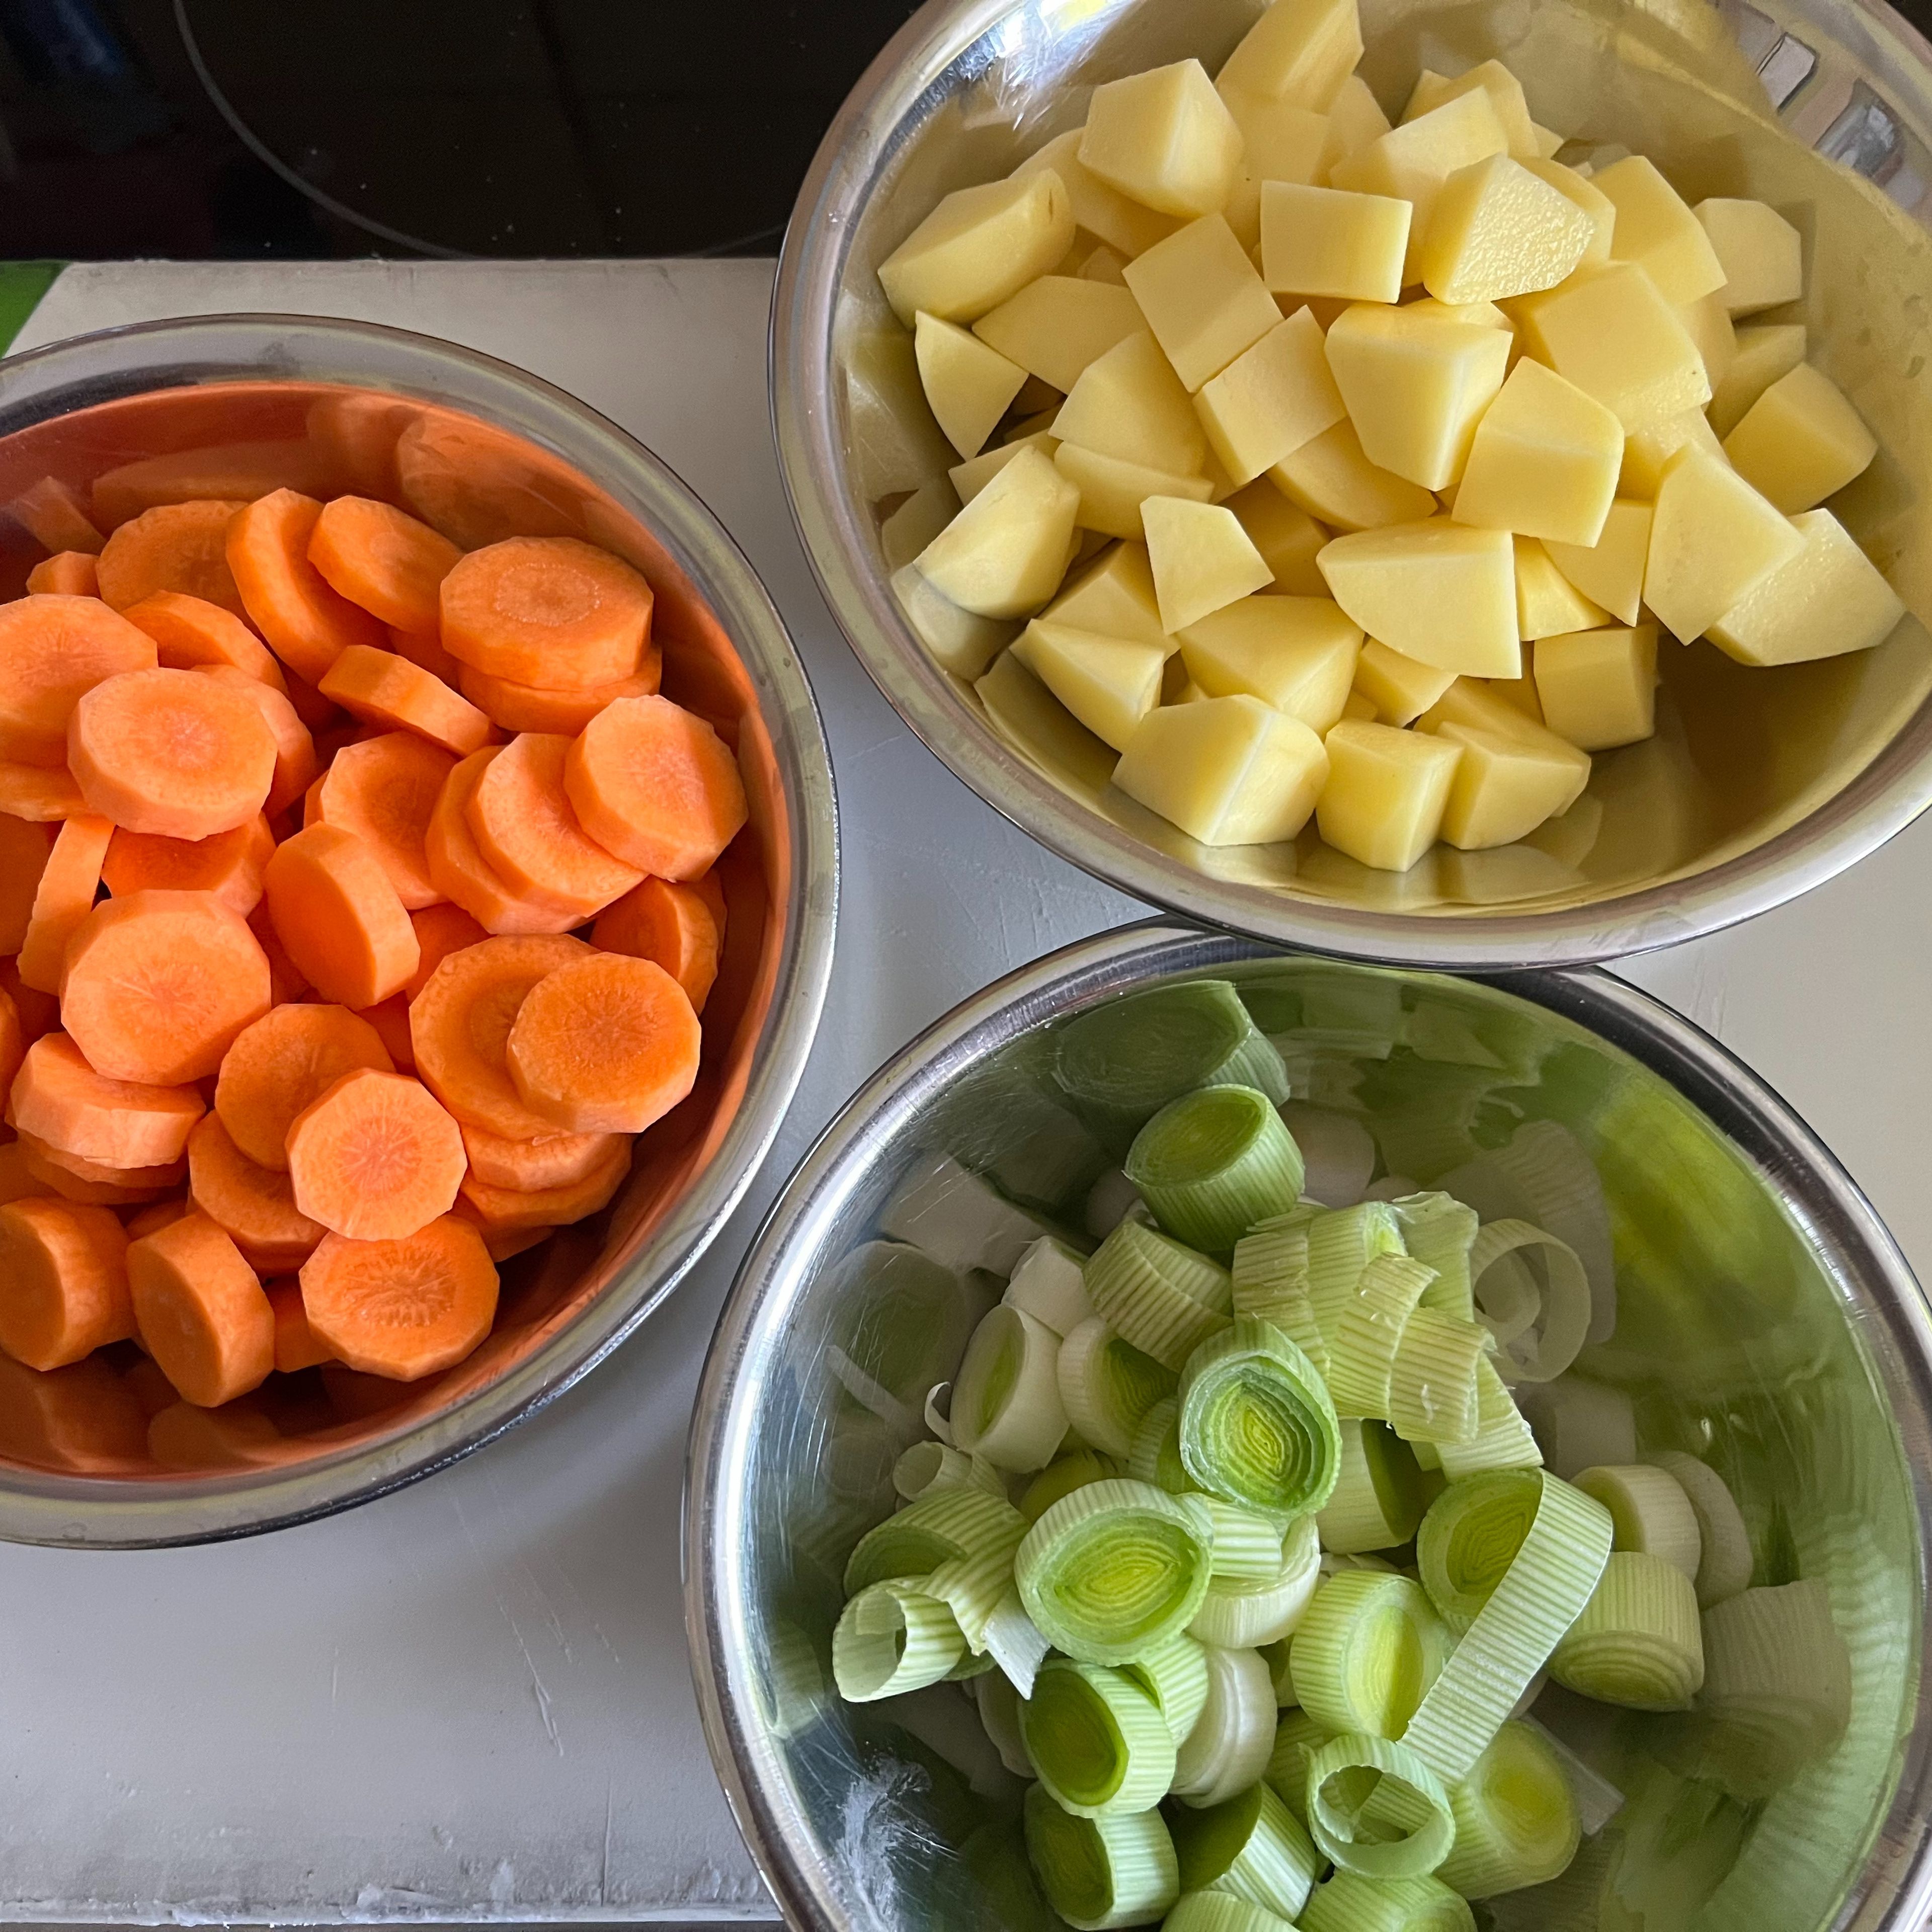 Als erstes die Karotten in Scheiben, die Kartoffeln in kleine Würfel und den Lauch in Ringe schneiden